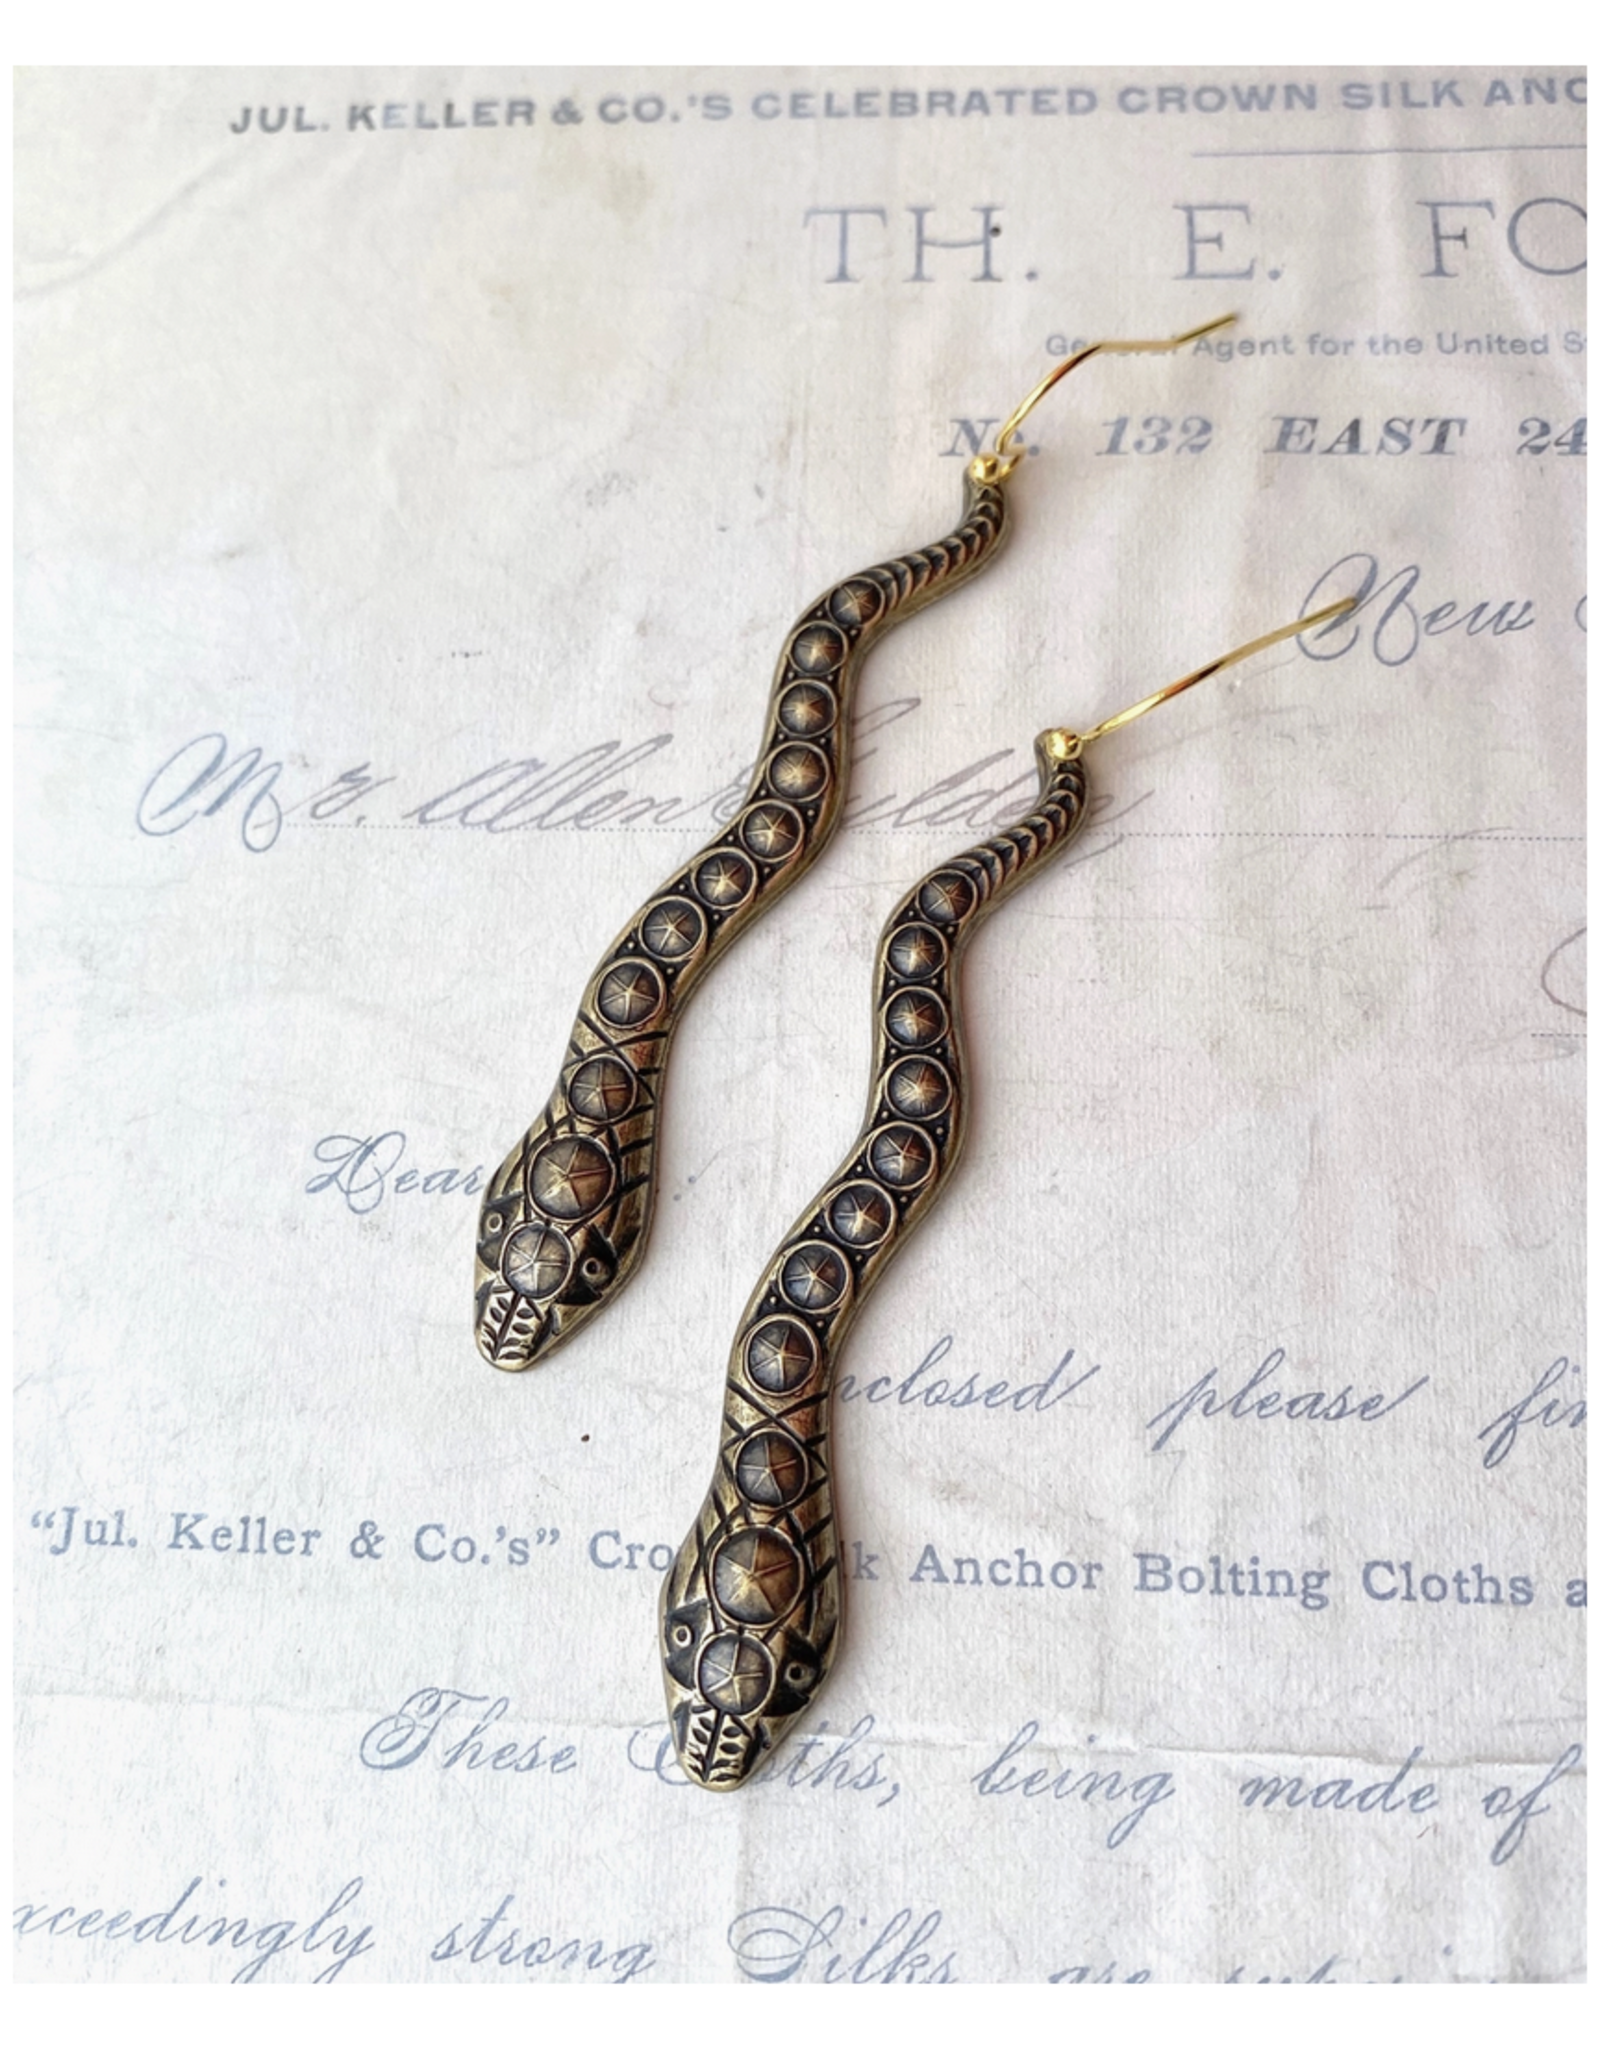 Snake Charmer Earrings